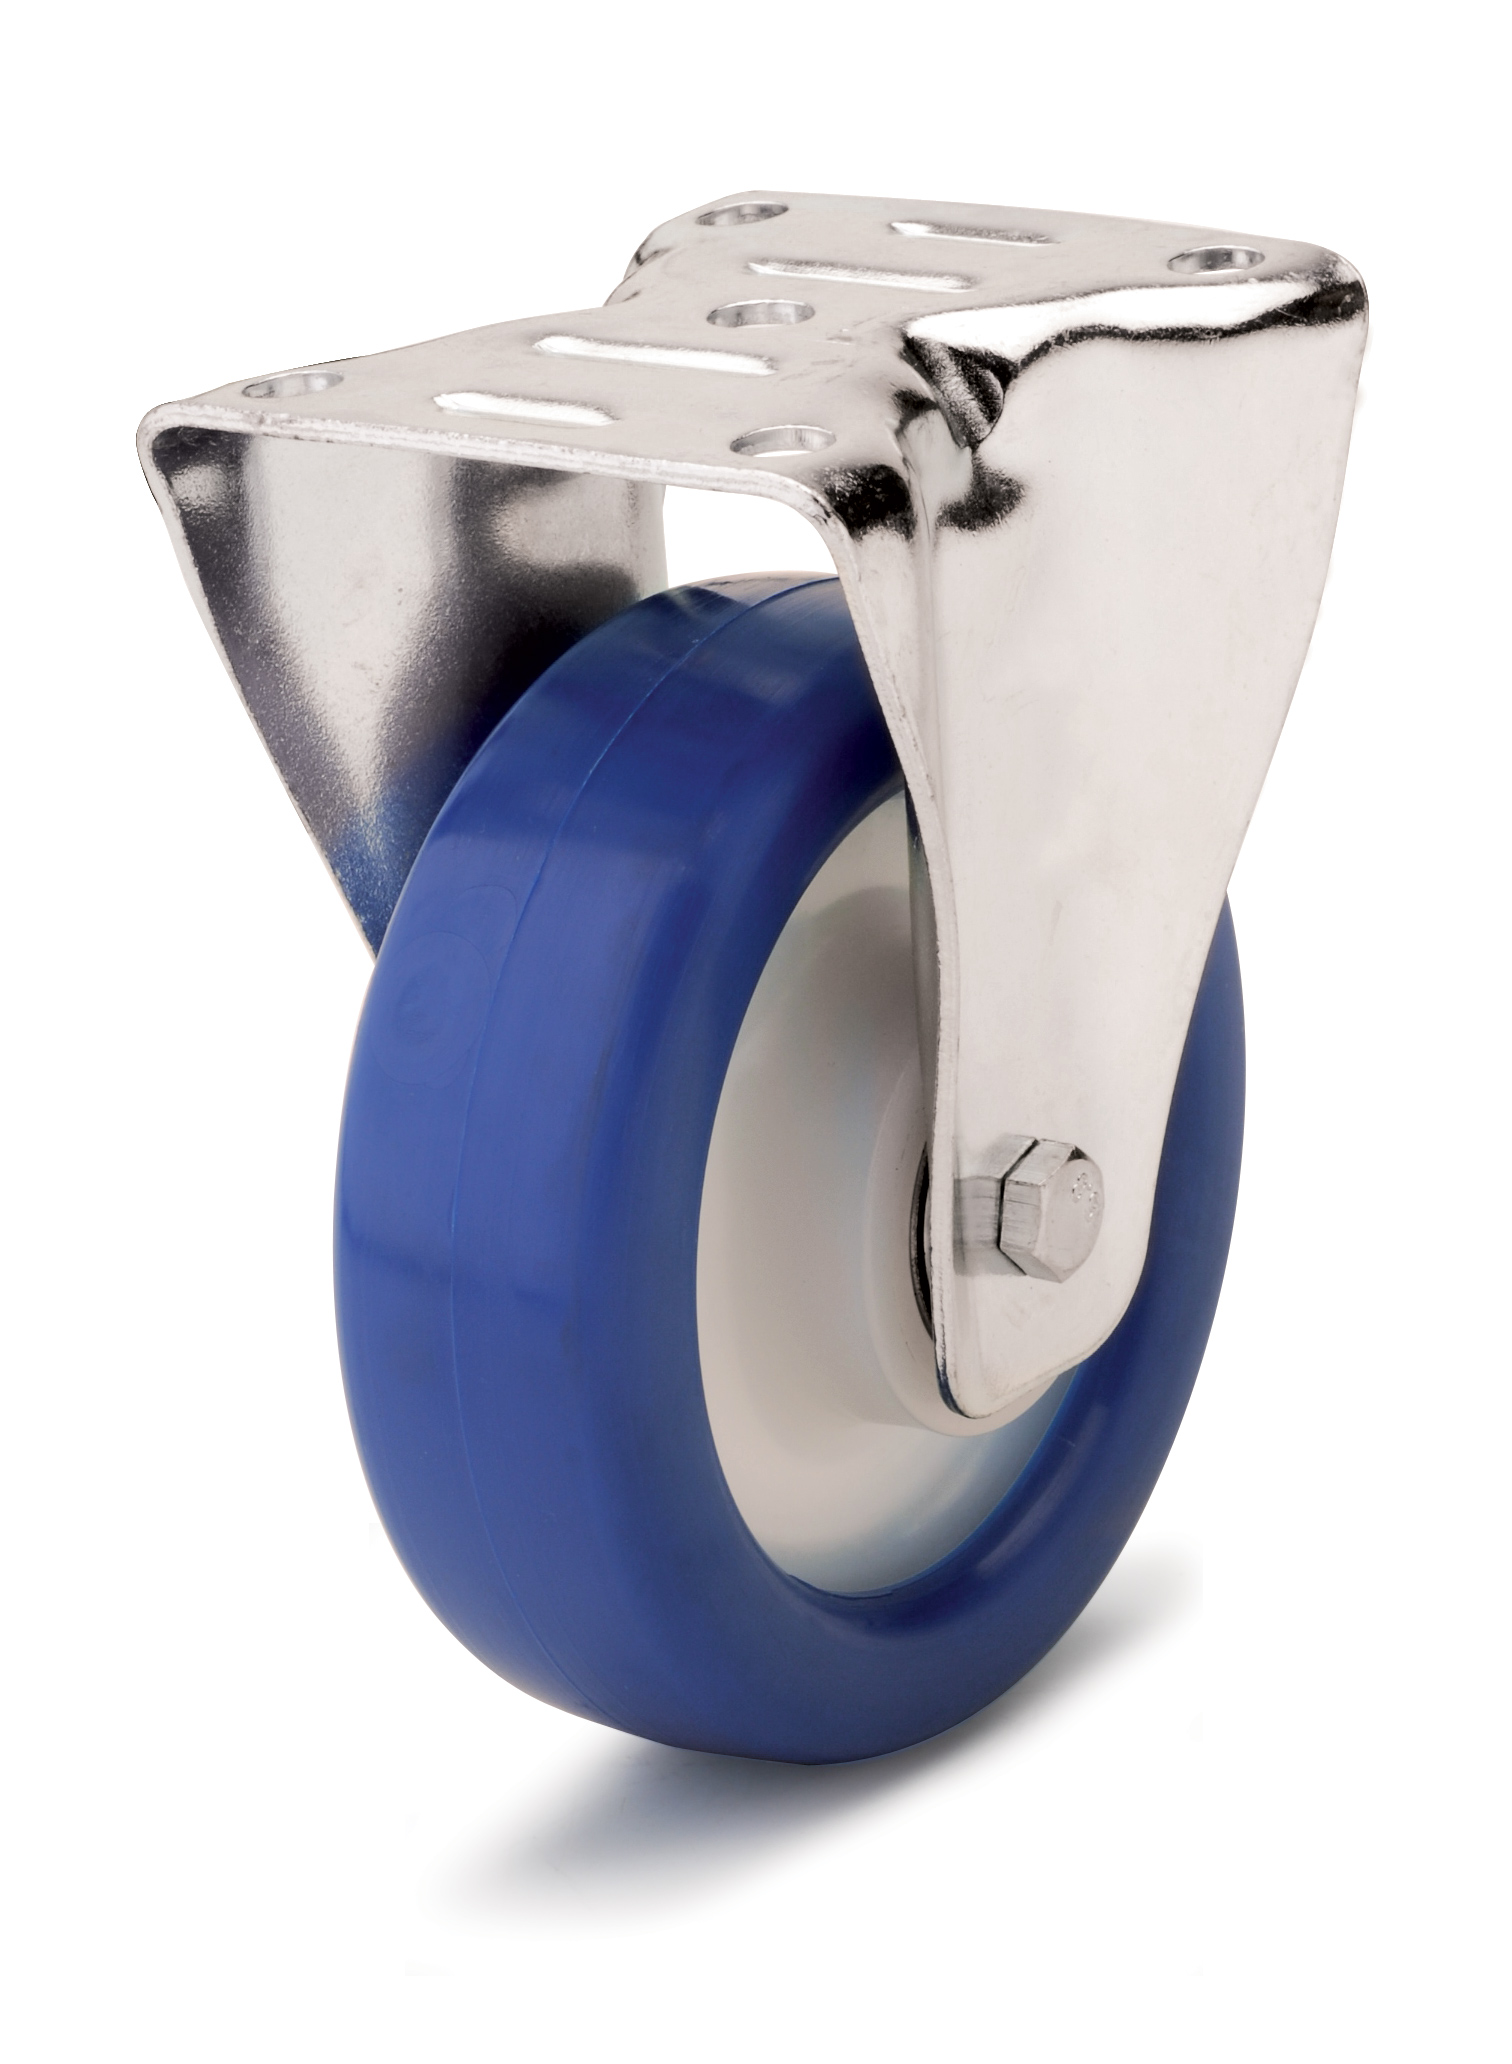 Колесо из отлитого под давлением синего полиуретанового контактного слоя и усиленного основания колеса.